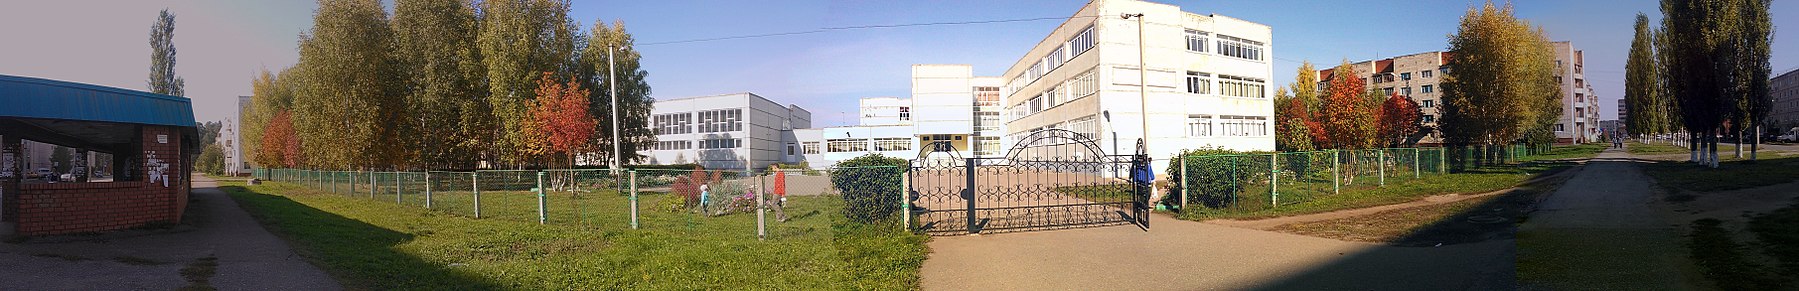 Школа 13 г. Нефтекамск - 파노라마mio.jpg